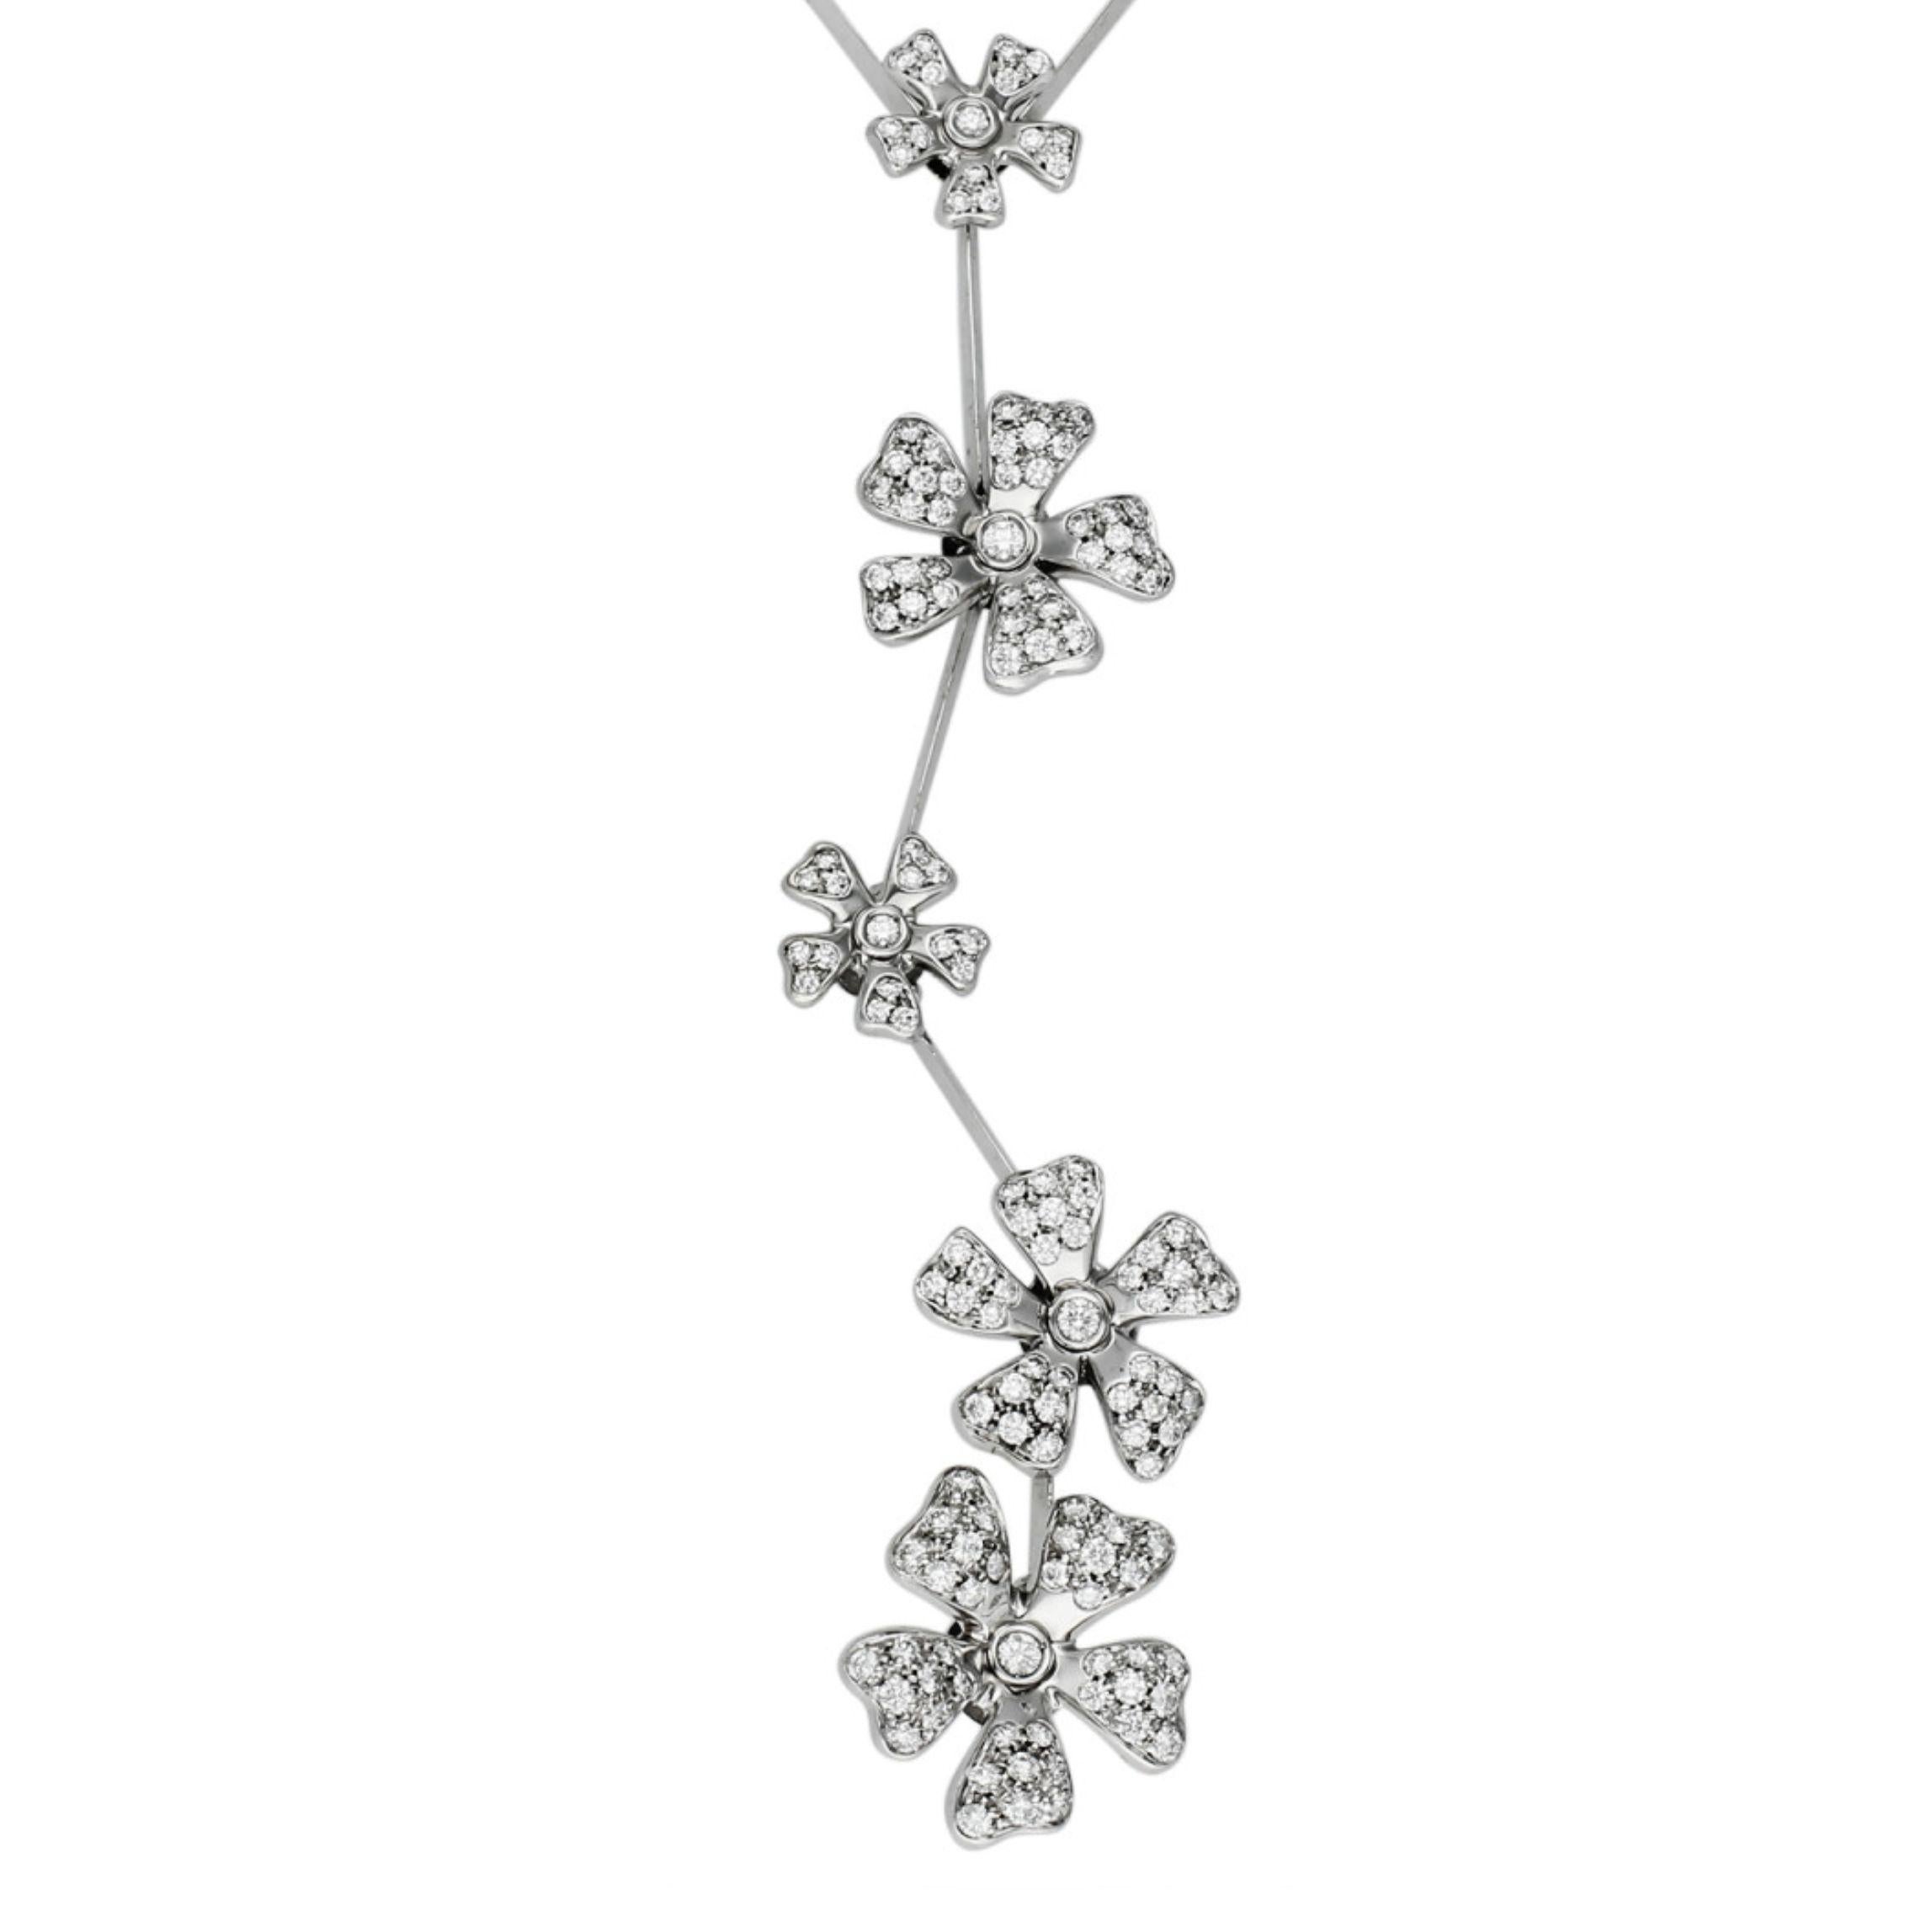 Diese Pre-Loved De Beers Wild Flower Necklace ist ein exquisites Stück mit einer bezaubernden Anziehungskraft. Eine Symphonie aus Luxus und Natur mit einer Kaskade sorgfältig gearbeiteter, mit Diamanten besetzter Blumen, die zart an einer